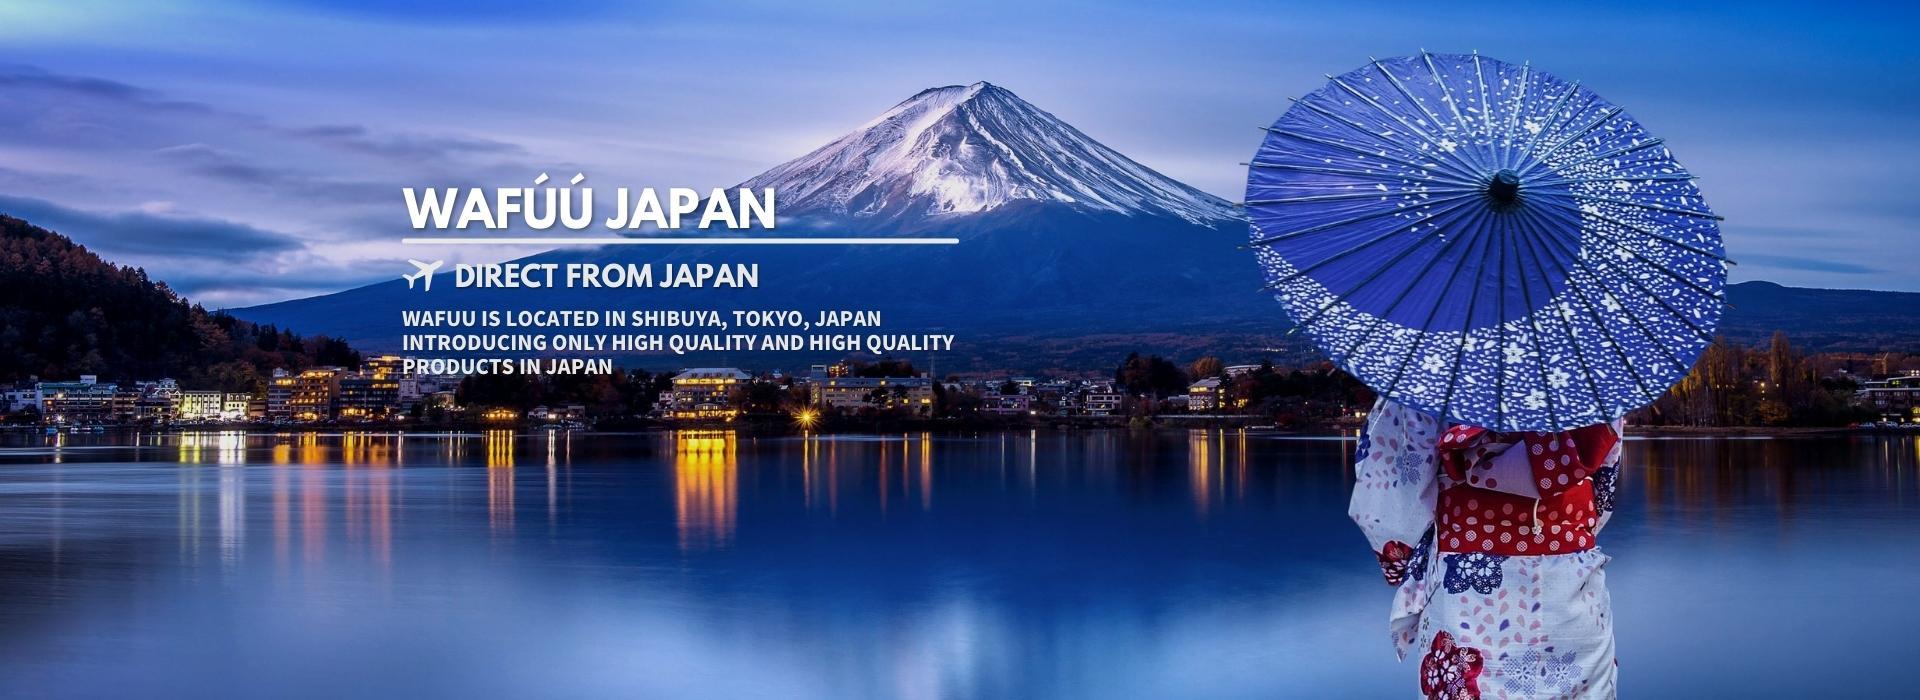 WAFUU du Japon : expansion mondiale en 20 langues, croissance de plus de 1 200 %